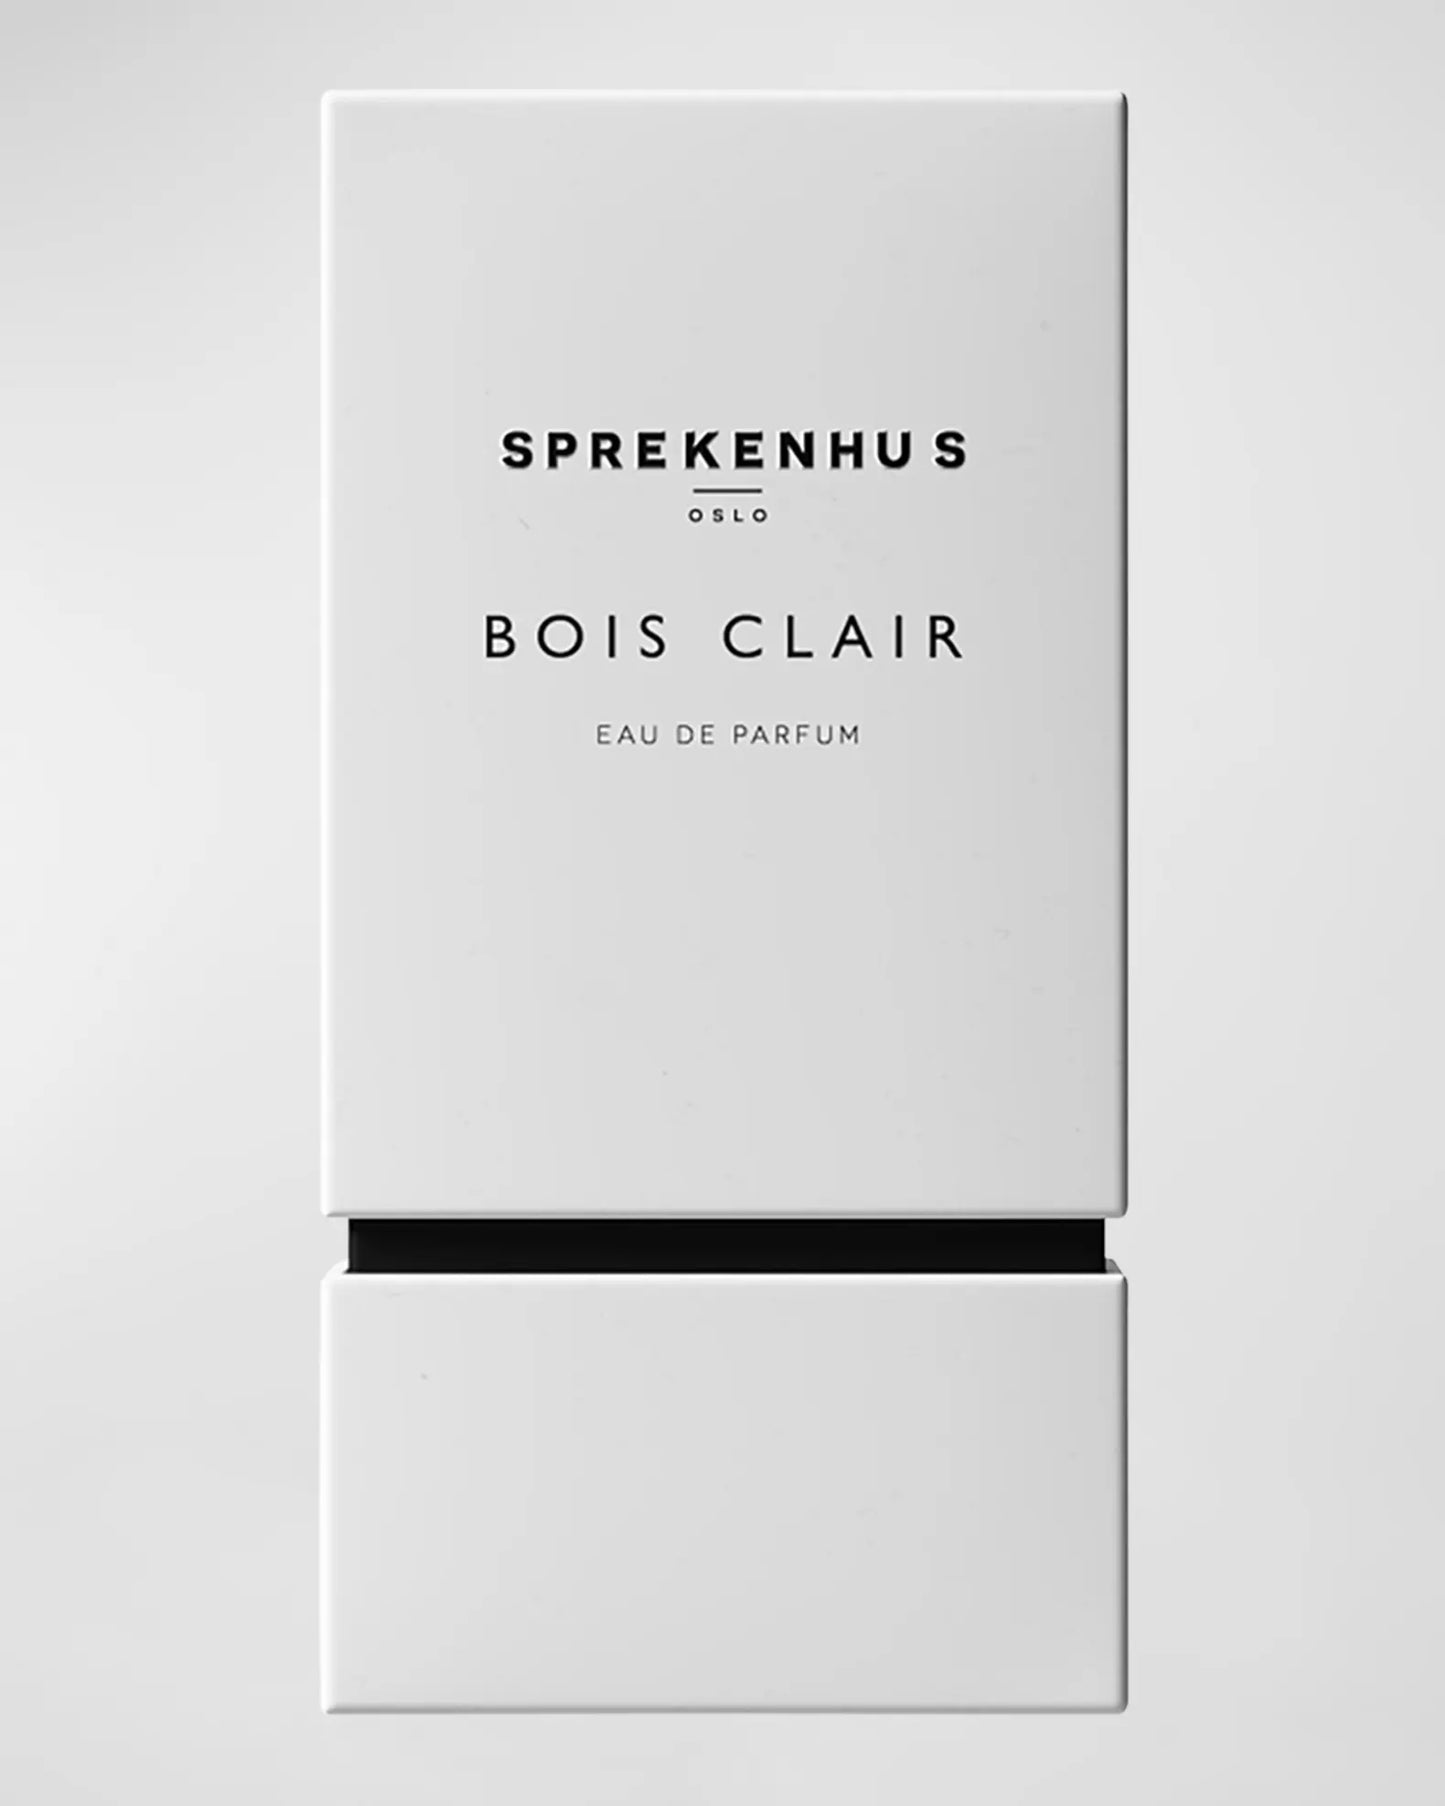 SPREKENHUS BOIS CLAIR EAU DE PARFUM 3.4 oz. - $249.00